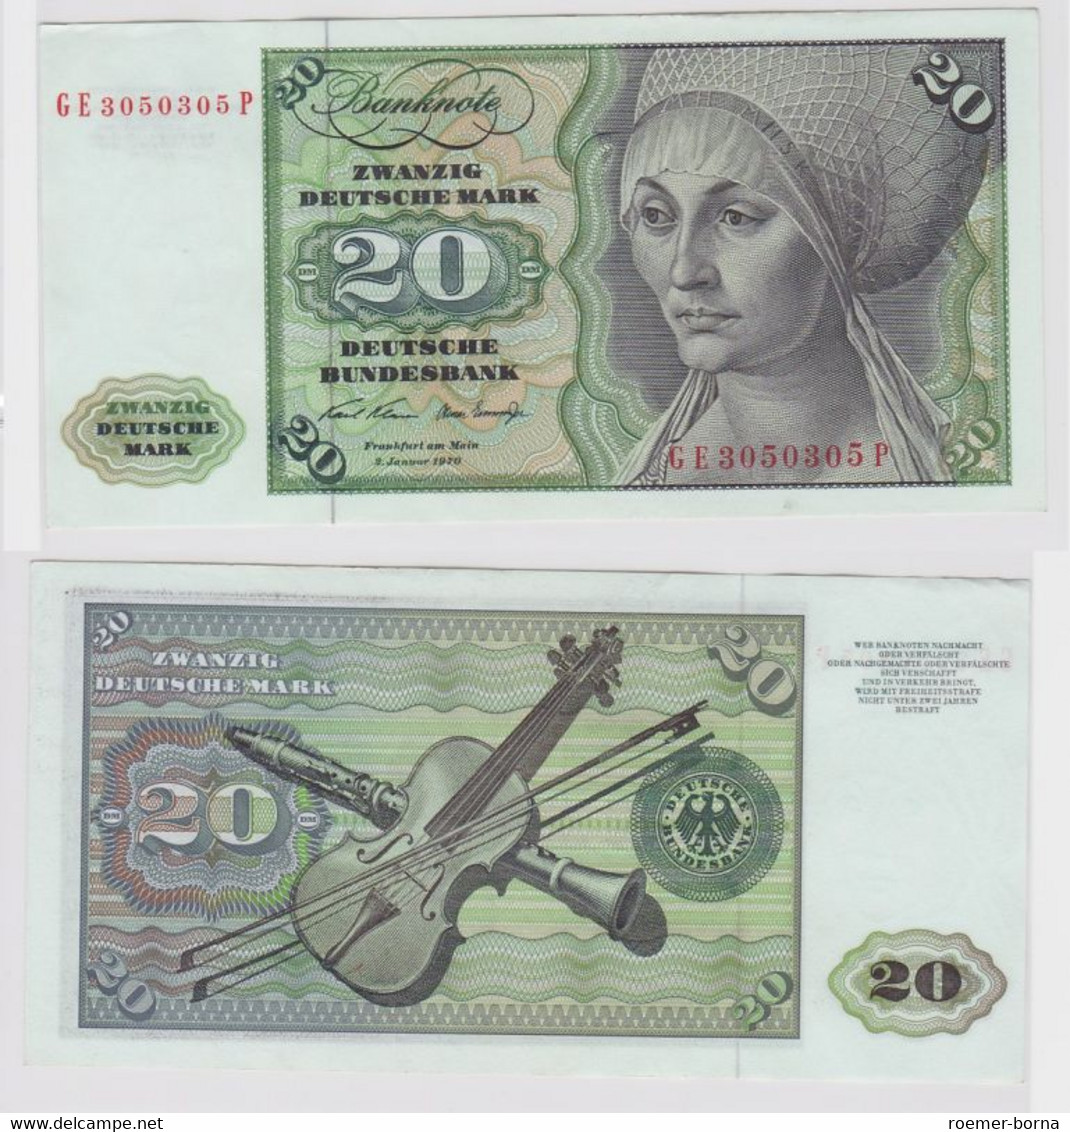 T148242 Banknote 20 DM Deutsche Mark Ro. 271b Schein 2.Jan. 1970 KN GE 3050305 P - 20 DM